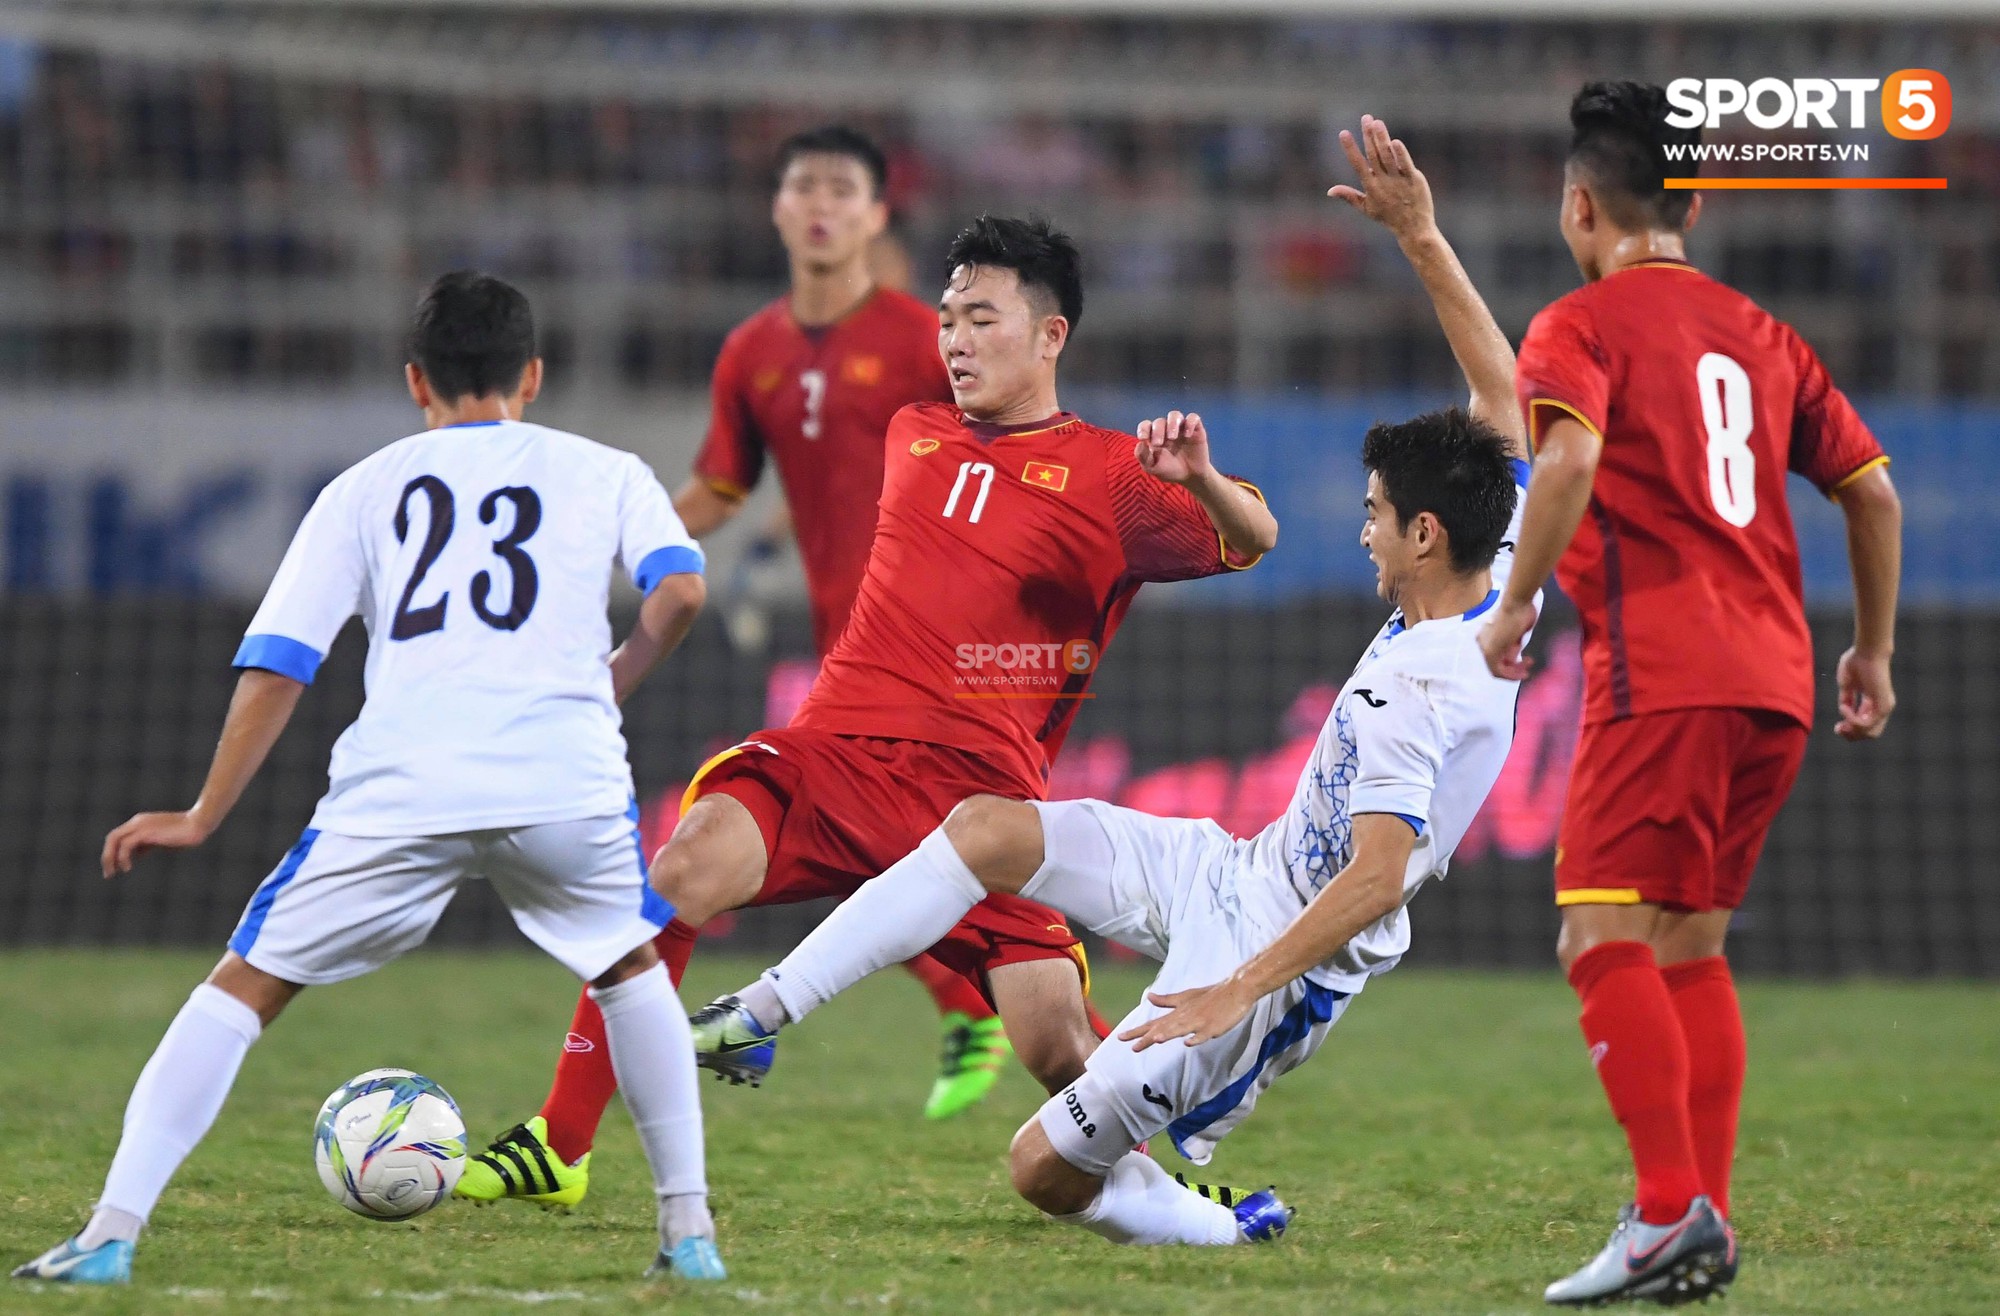 Văn Đức tỏa sáng với 1 pha xử lý đẳng cấp, U23 Việt Nam hòa U23 Uzbekistan trong trận đấu cuối cùng - Ảnh 8.